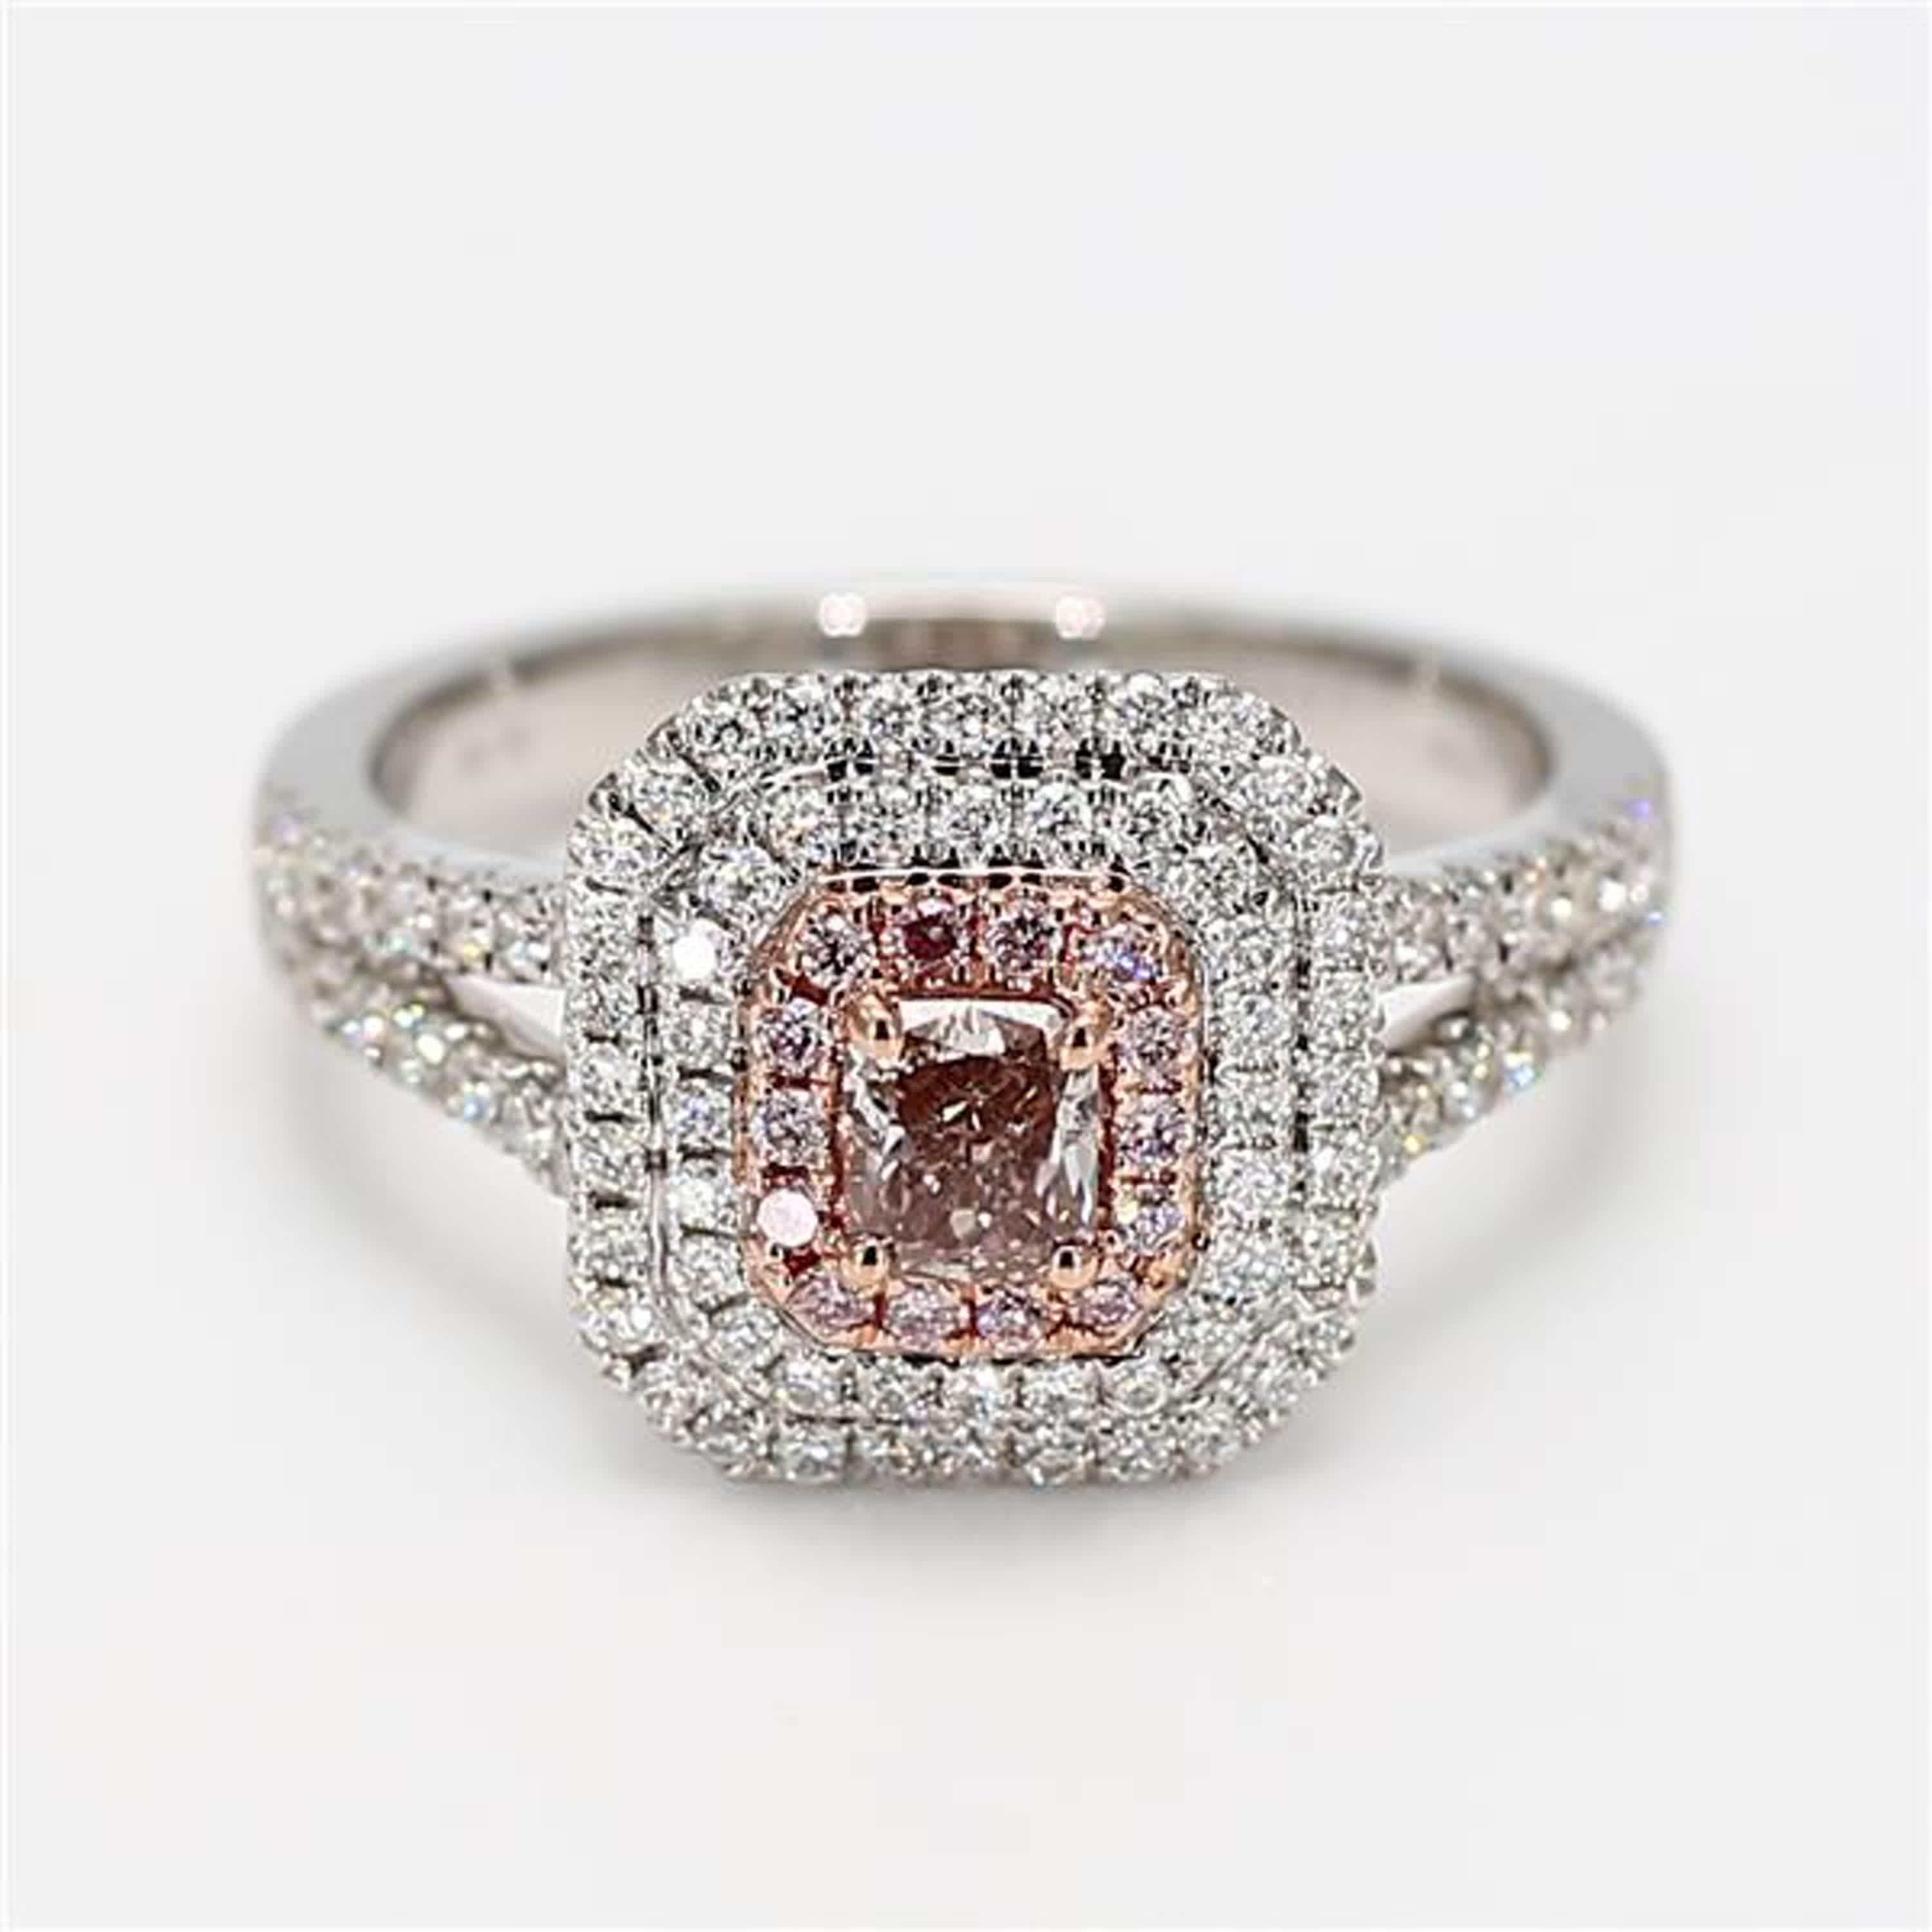 Der klassische GIA-zertifizierte Diamantring von RareGemWorld. In einer schönen Fassung aus 18 Karat Rosé- und Weißgold mit einem natürlichen rosa Diamanten im Strahlenschliff. Der rosafarbene Diamant ist umgeben von einem runden natürlichen rosa